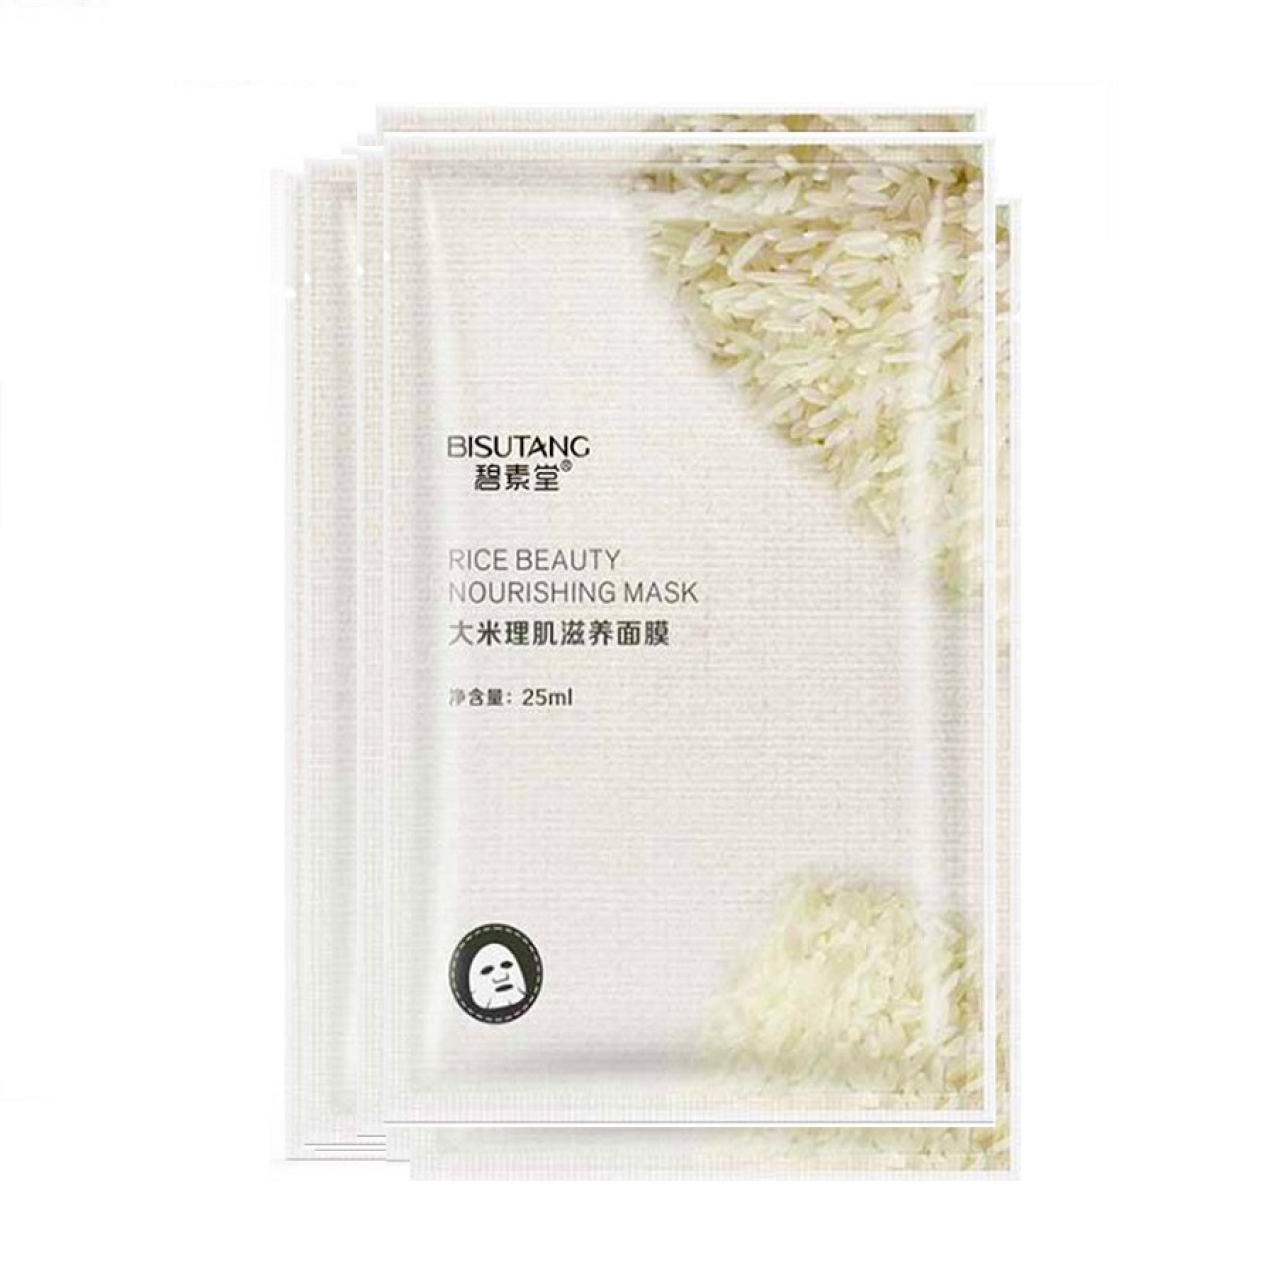 ماسک ورقه ای بیسوتانگ مدل rice beauty